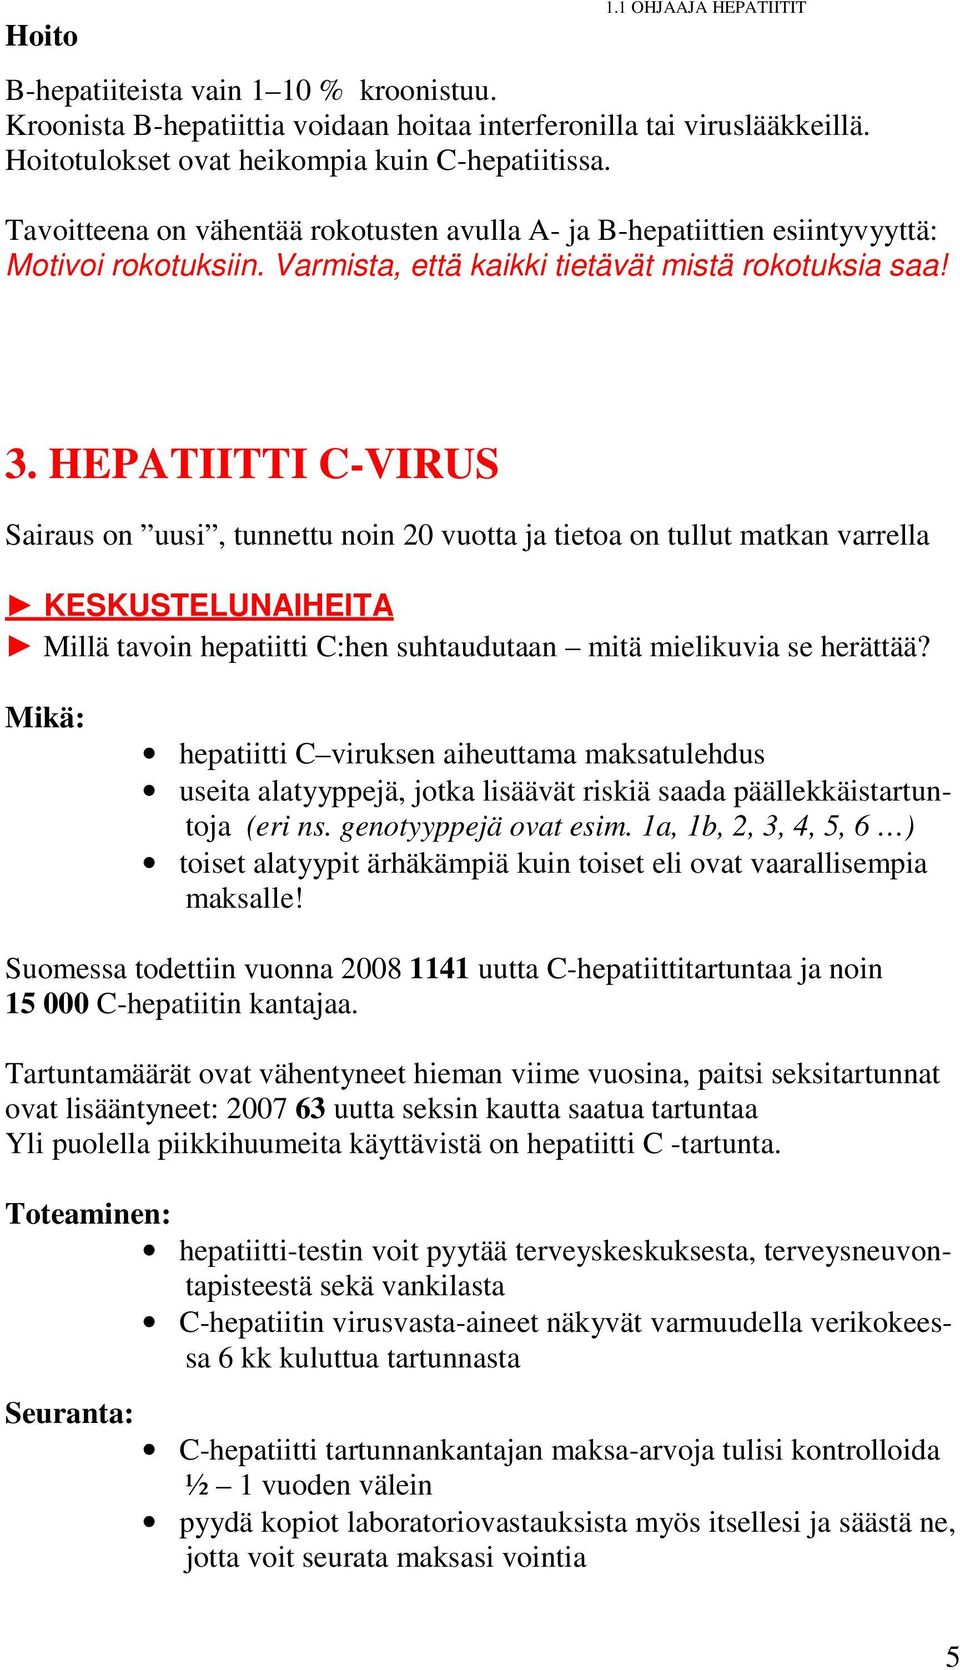 HEPATIITTI C-VIRUS Sairaus on uusi, tunnettu noin 20 vuotta ja tietoa on tullut matkan varrella KESKUSTELUNAIHEITA Millä tavoin hepatiitti C:hen suhtaudutaan mitä mielikuvia se herättää?